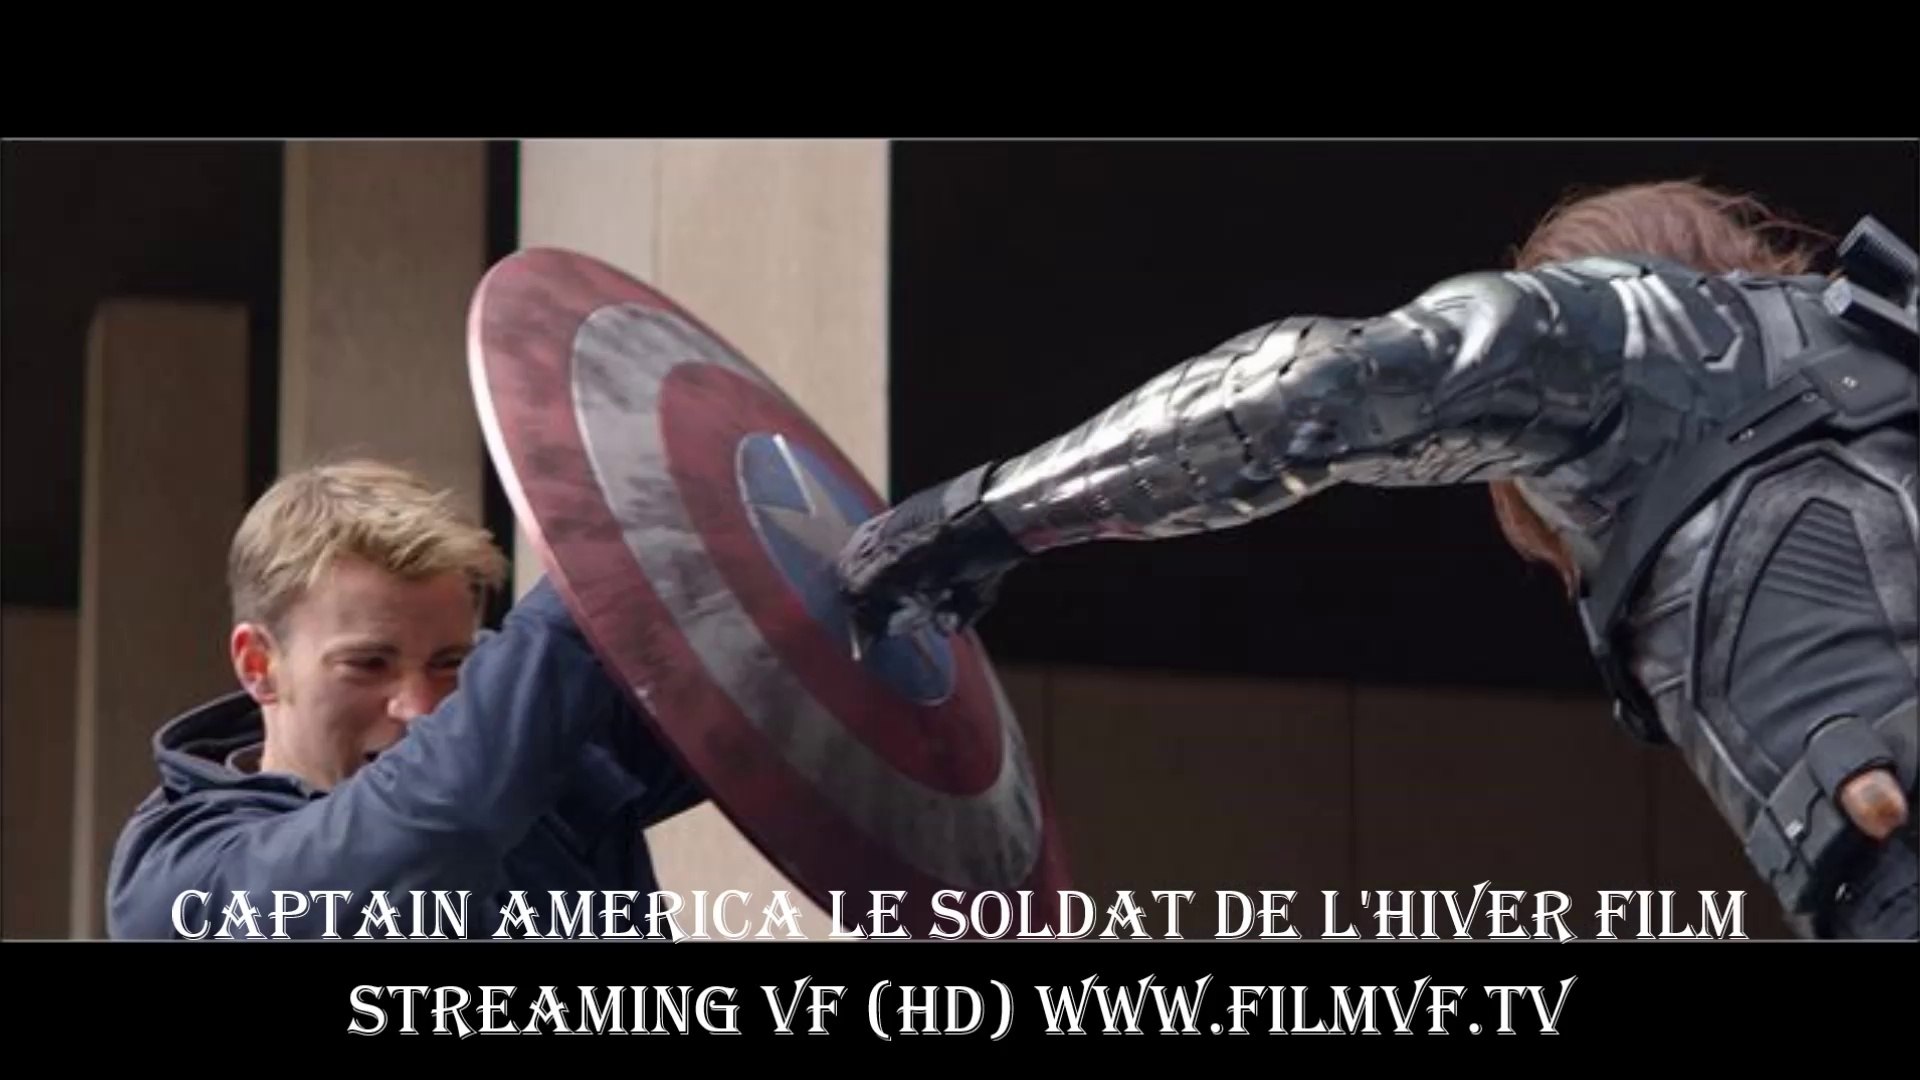 Captain America 2 le soldat de l'hiver regarder film complet streaming VF  en entier en Français - video Dailymotion